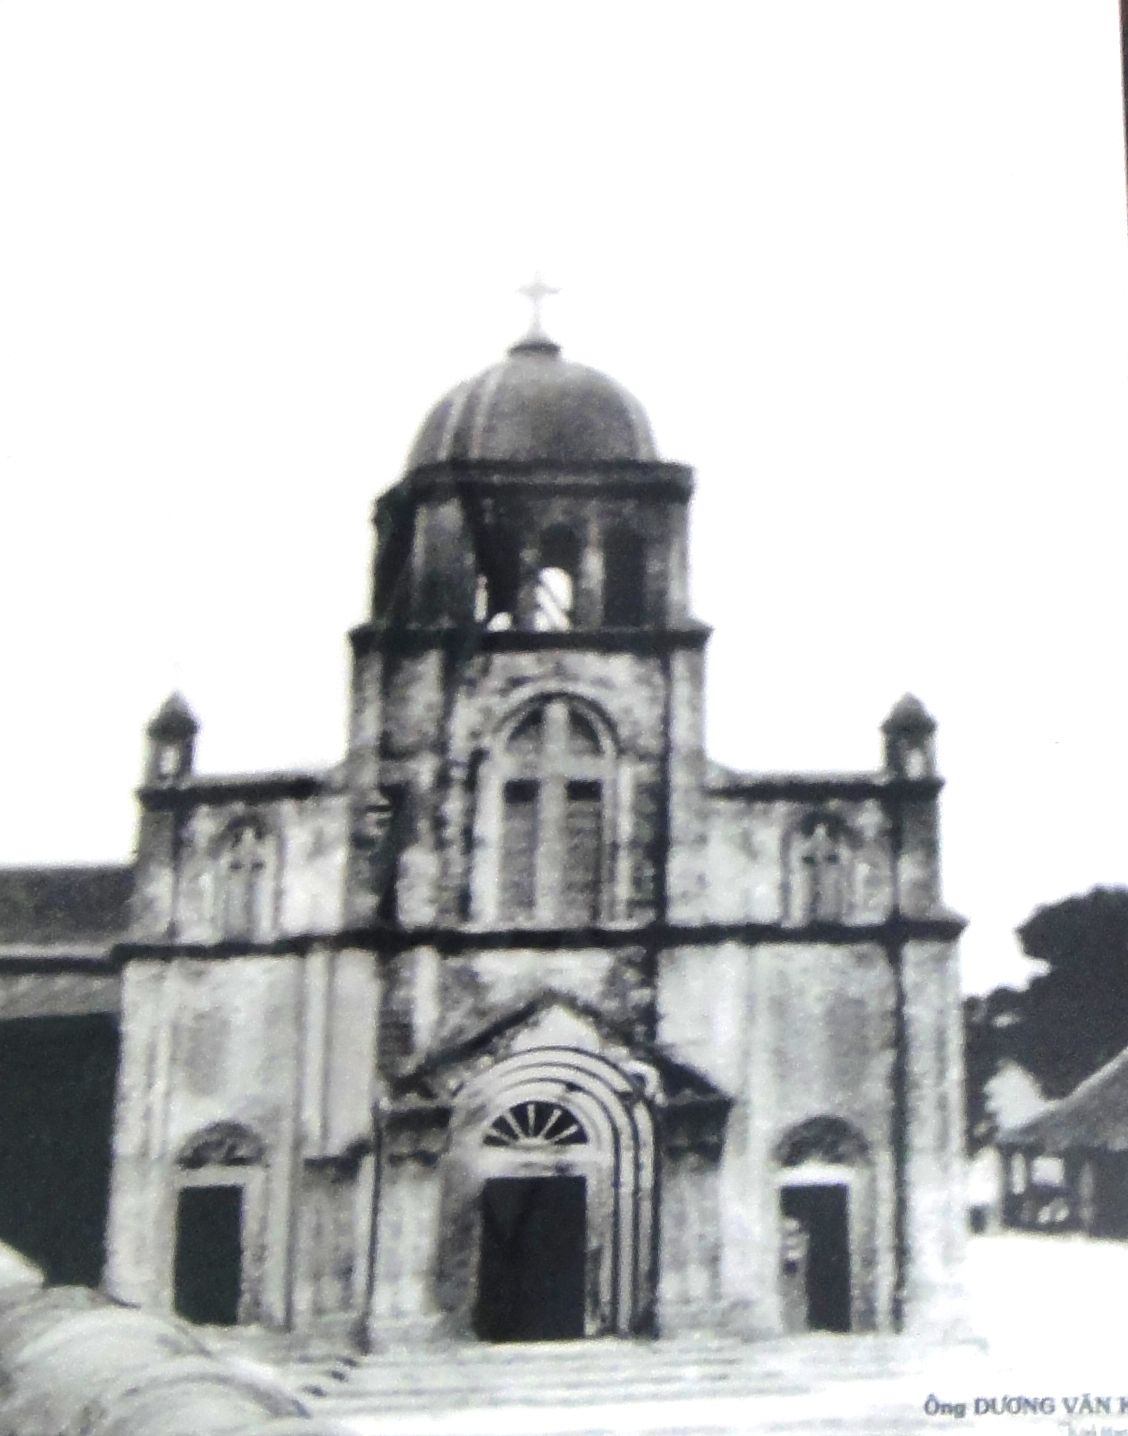 Nhà thờ Tam Tòa Quảng Bình với vẻ đẹp cổ kính bên dòng Nhật Lệ 3